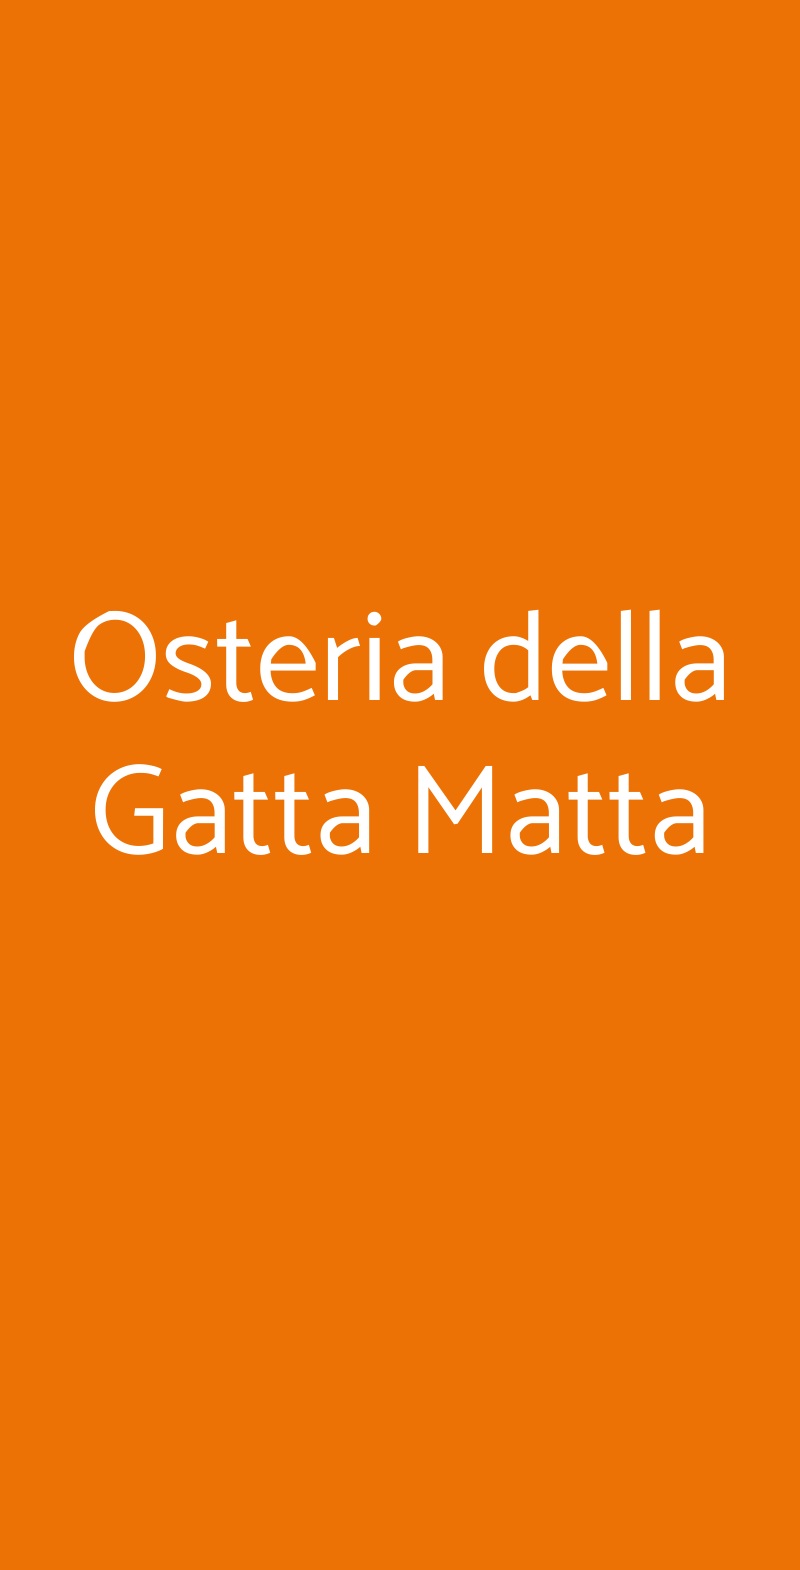 Osteria della Gatta Matta Parma menù 1 pagina